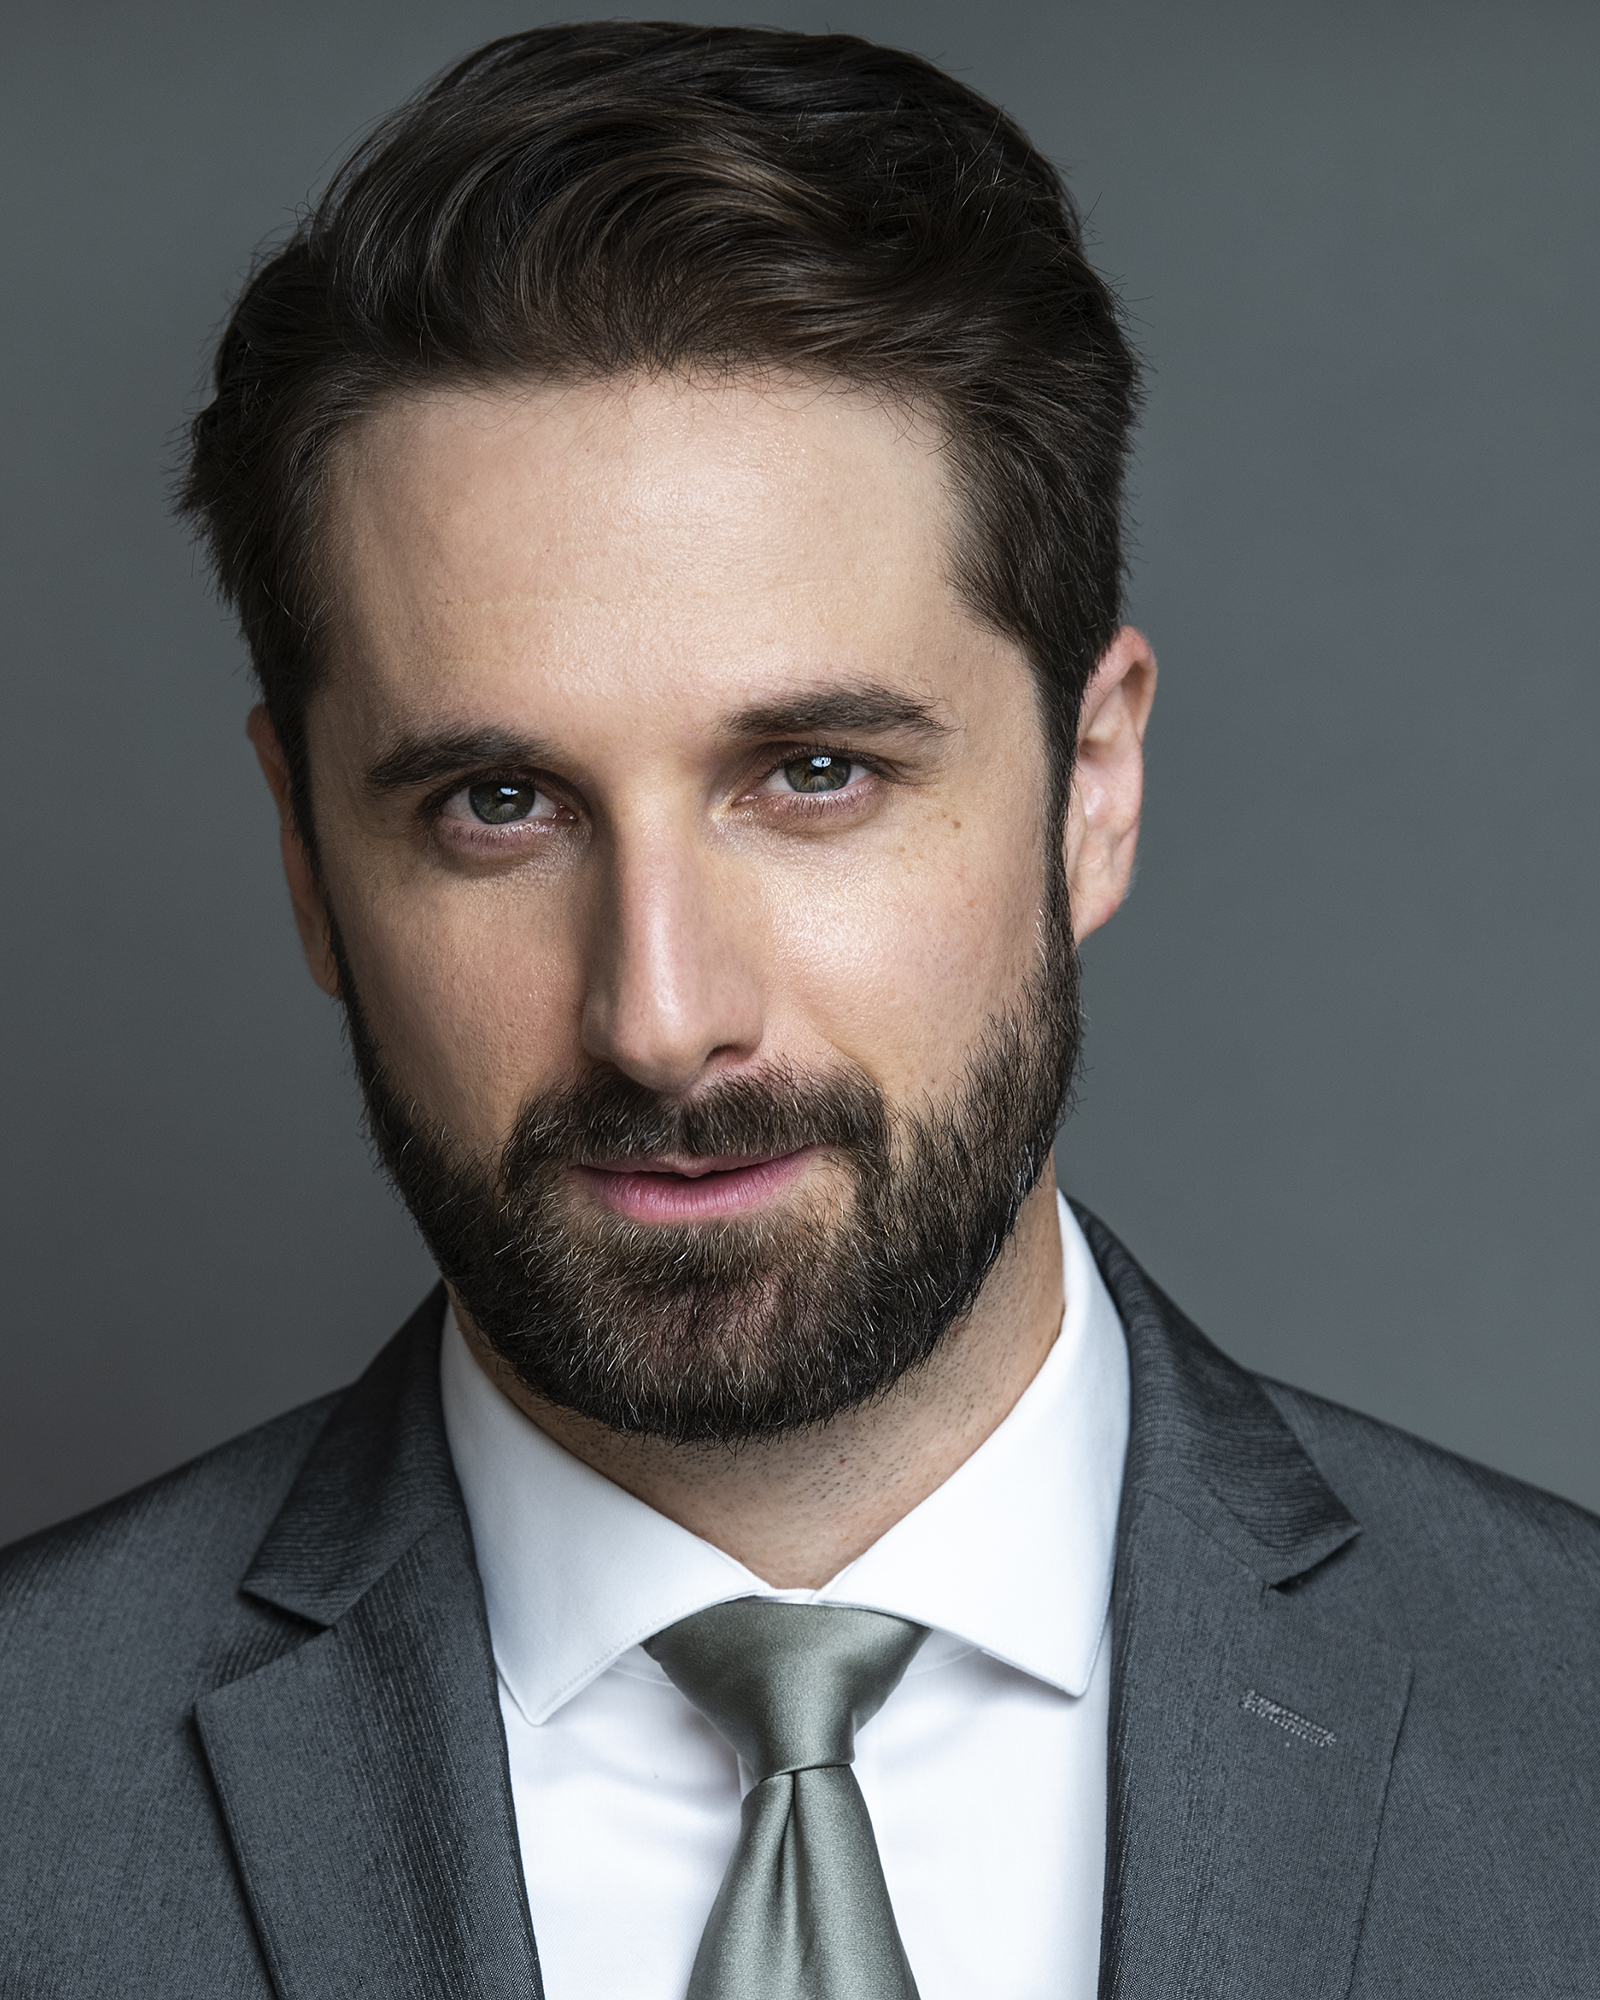 Elias Scoufaras Actor - Executive - CEO - Villain - Wallstreet Bro - Investment Banker - Succession